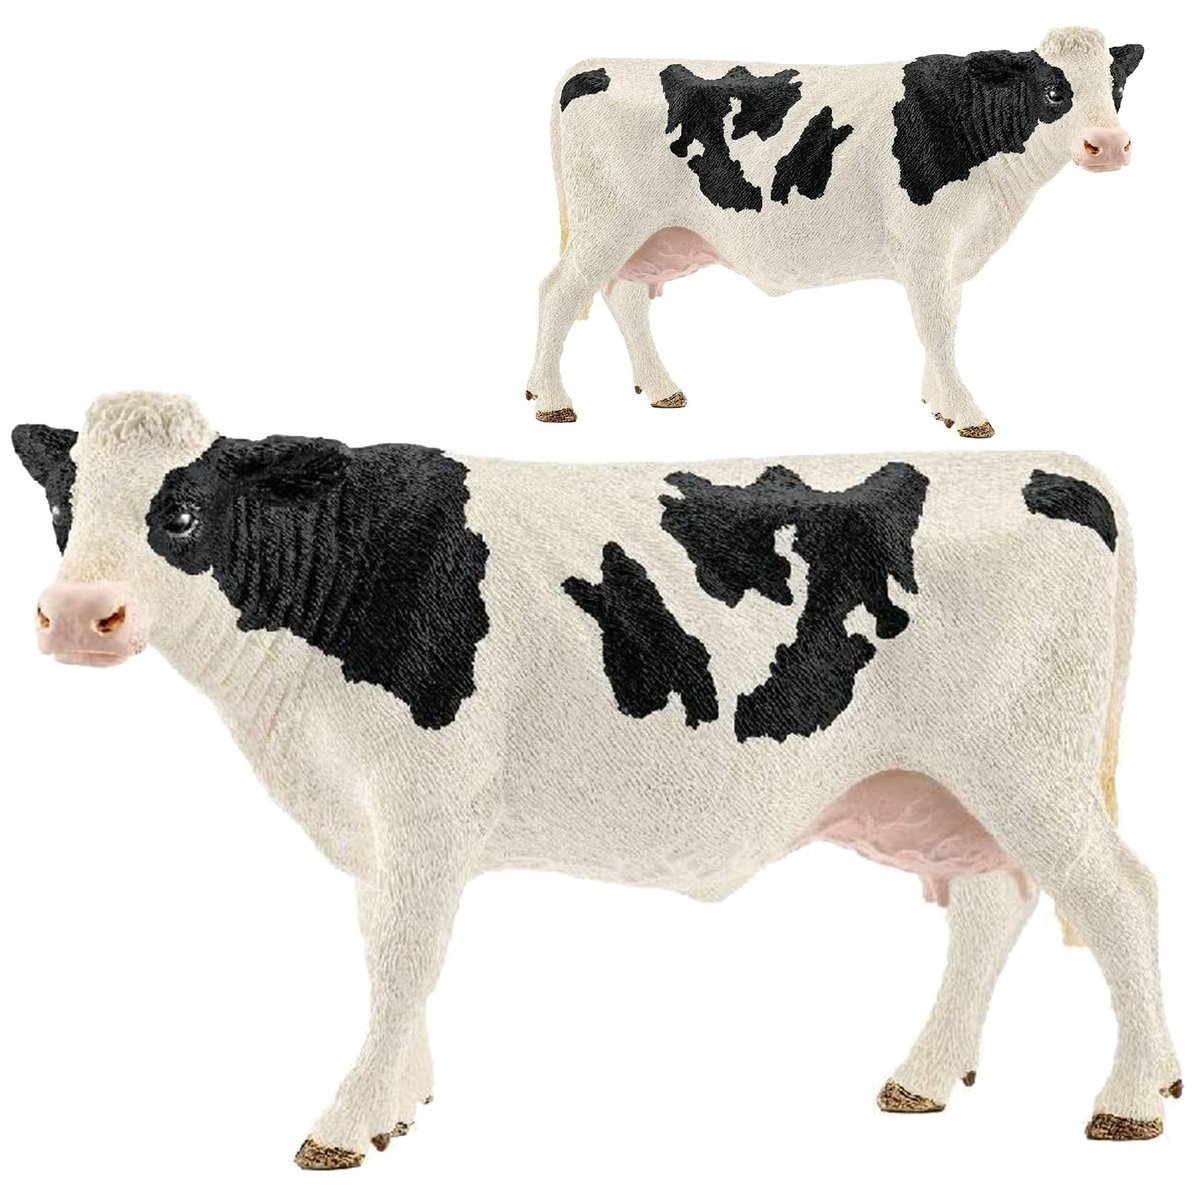 SCHLEICH Farm World Figurka Krowa rasy Holstein 13797